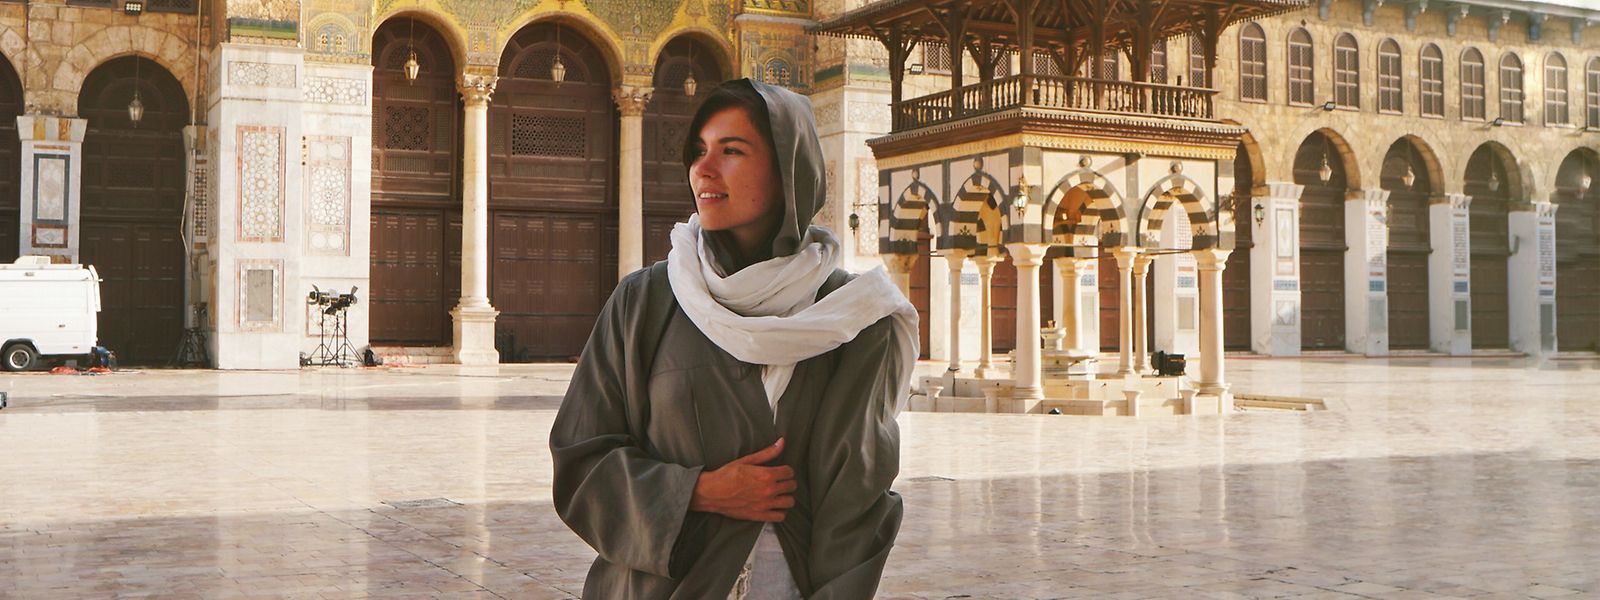 Eva zu Beck, Influencerin aus Polen, steht im Hof der Ummajaden-Moschee in Damaskus. Acht Jahre nach Beginn eines blutigen Bürgerkrieges mit mehr als einer halben Million Toten entdecken immer mehr Ausländer Syrien. Nicht als Entwicklungshelfer, sondern als Touristen. 